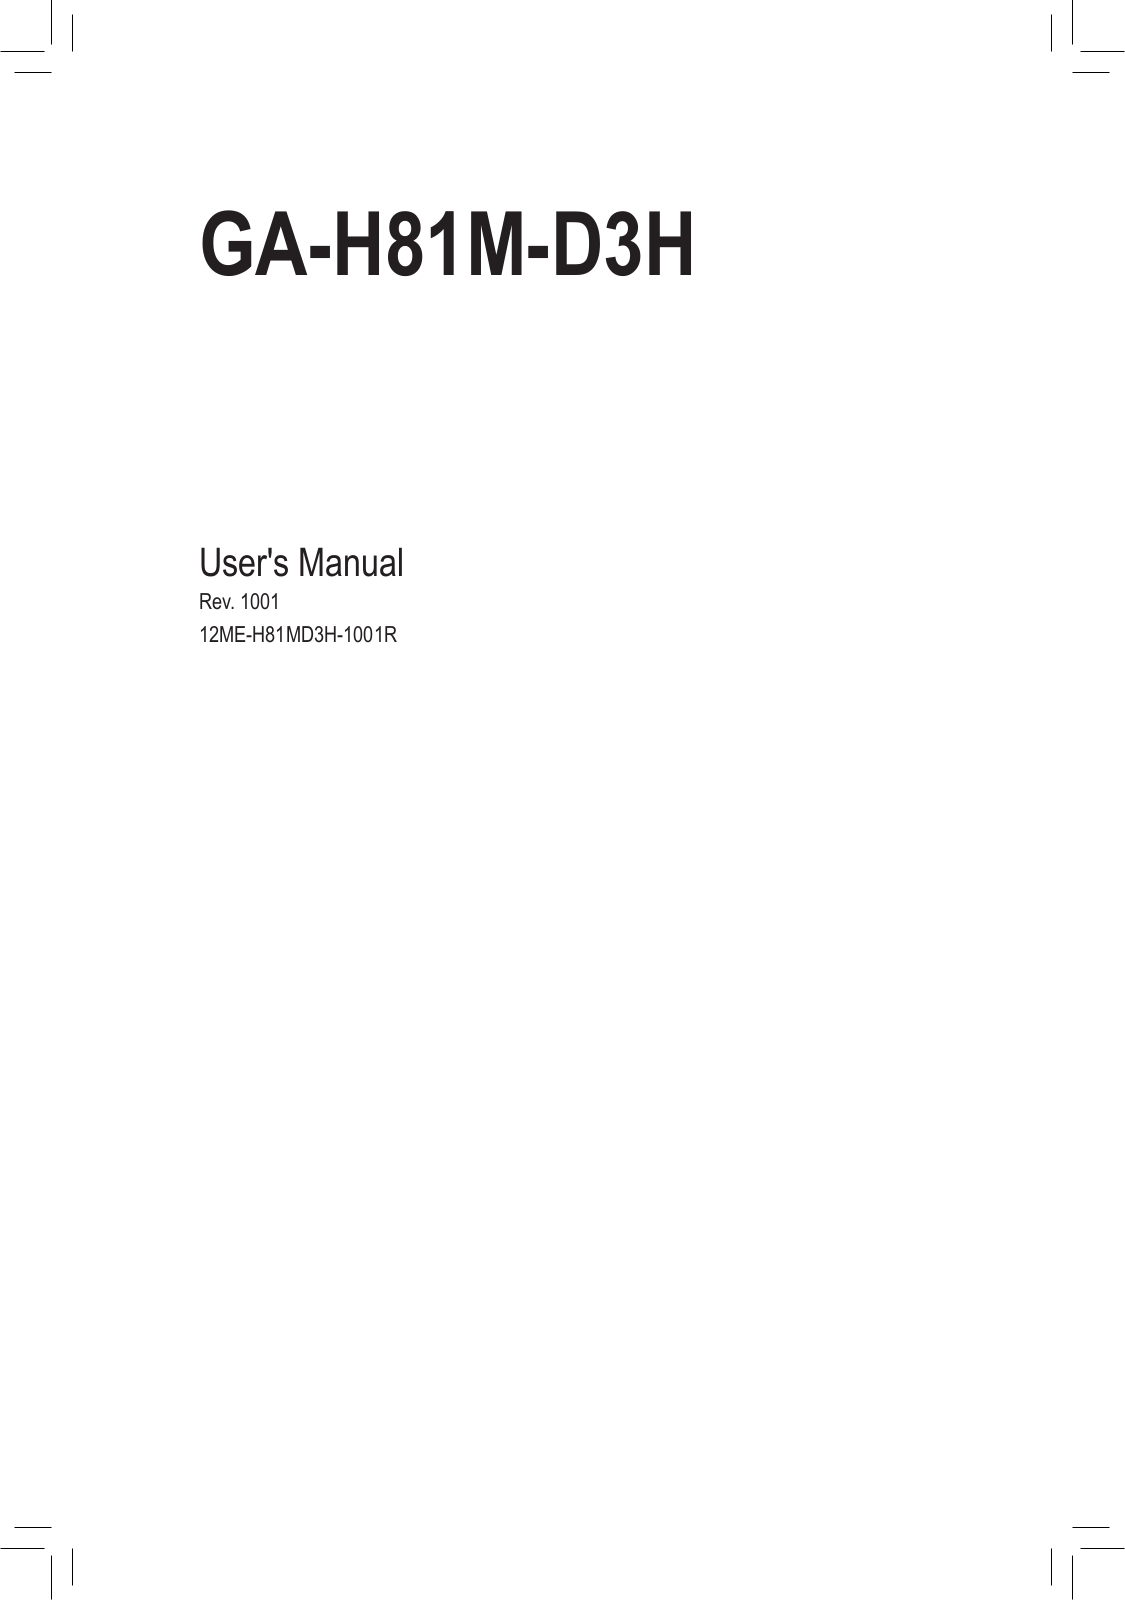 Gigabyte GA-H81M-D3H User Manual